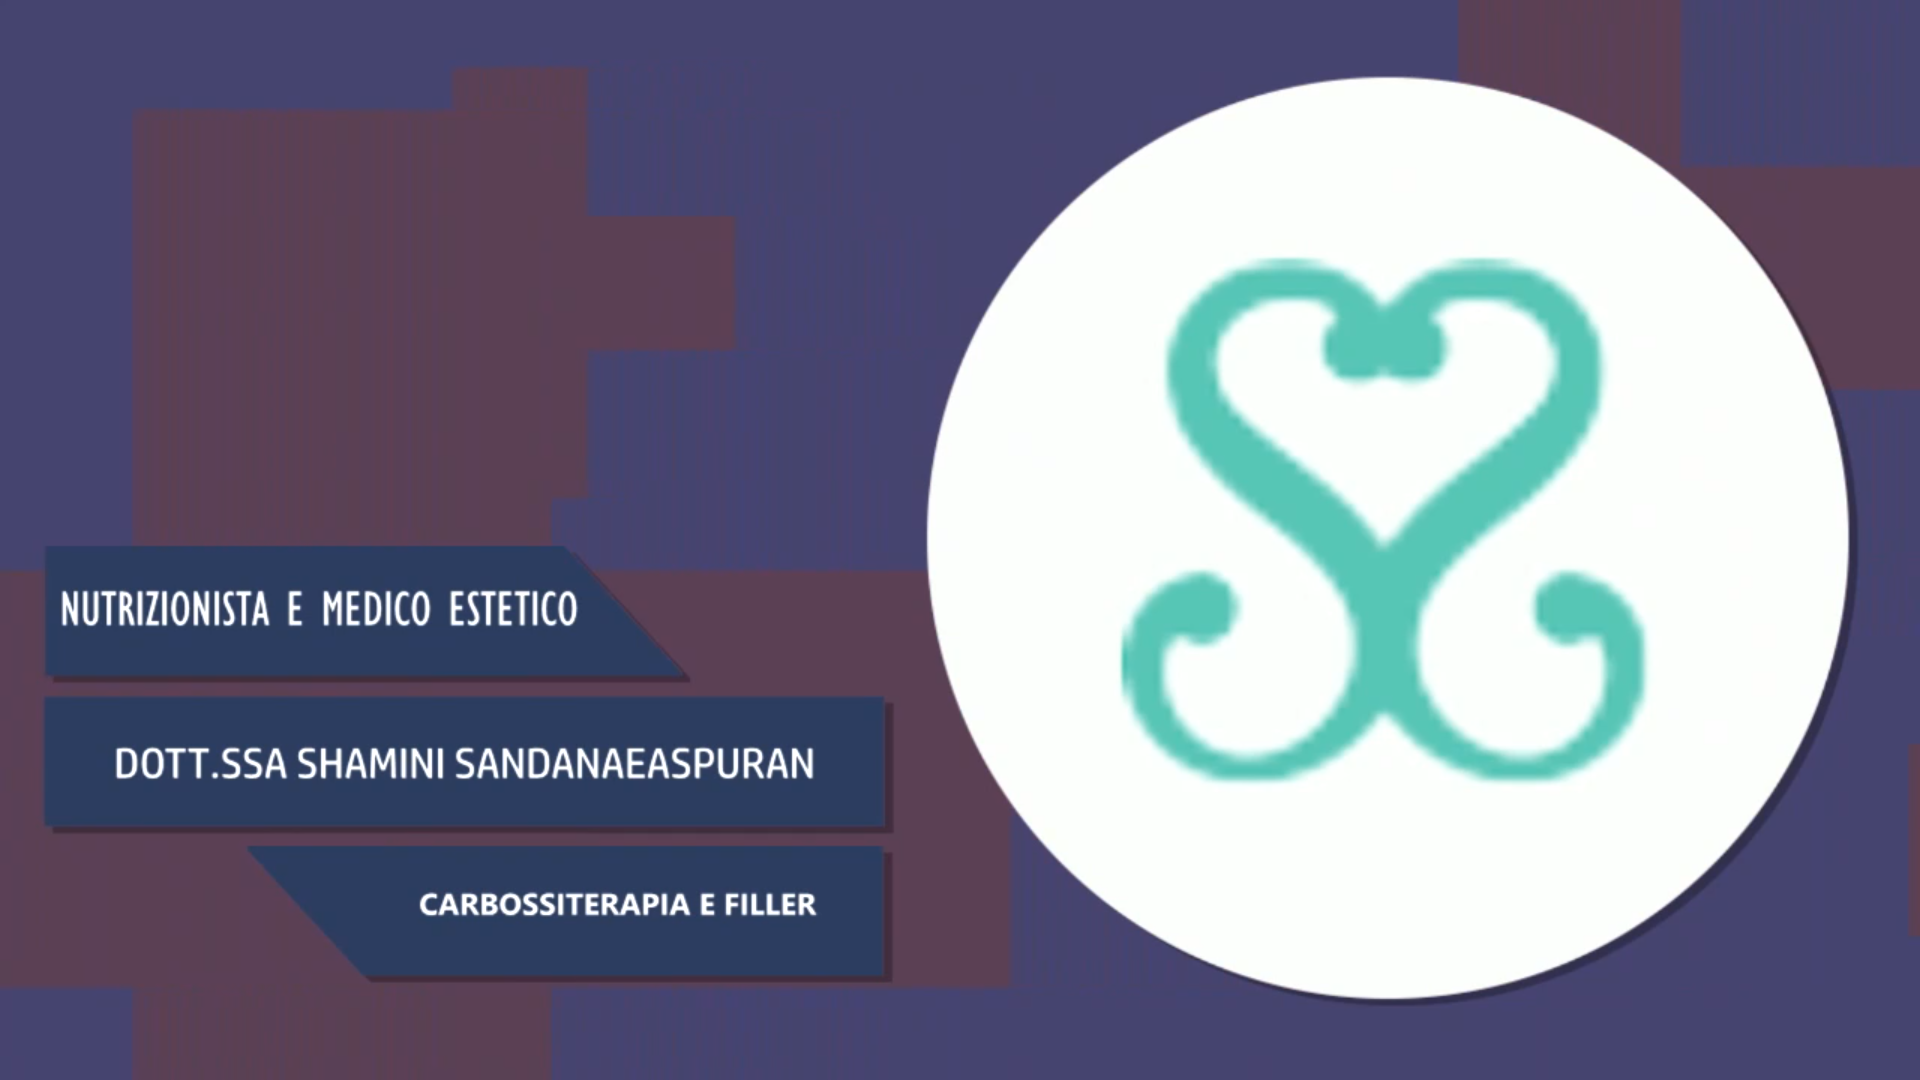 Intervista alla Dott.ssa Shamini Sandanaeaspuran – Carbossiterapia e filler